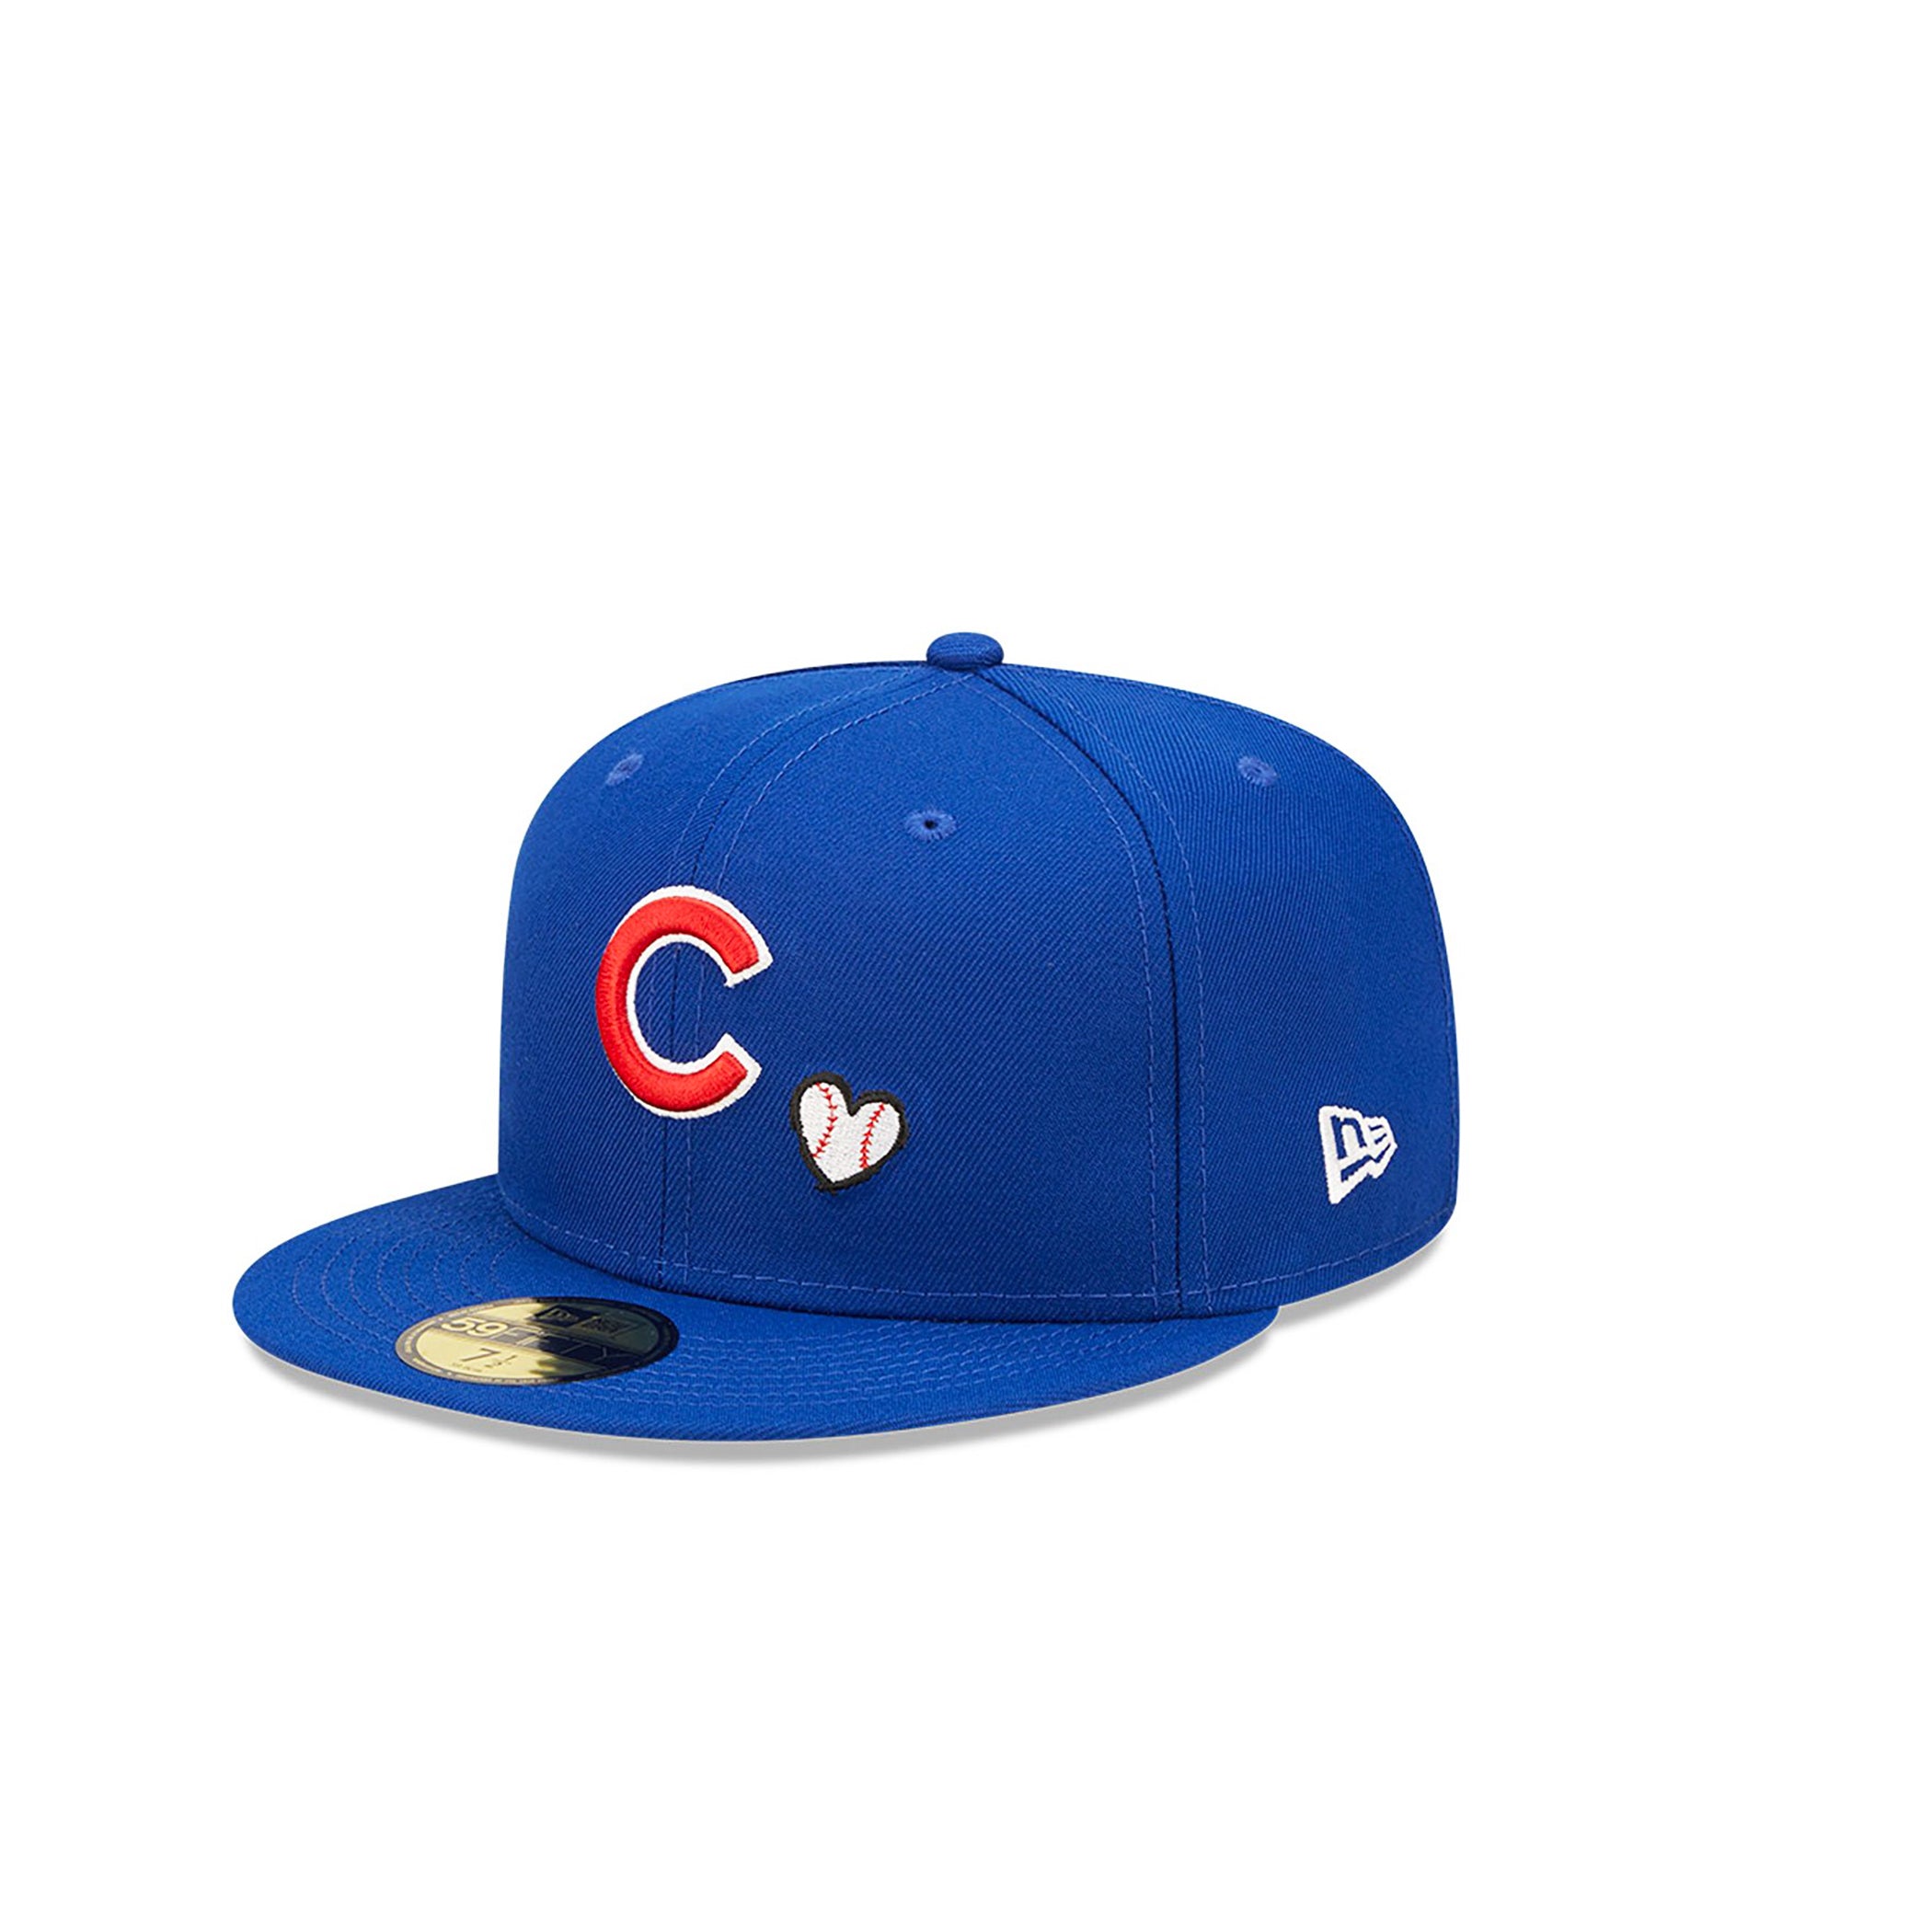 Blue Strap Back Cubs Adult Hat